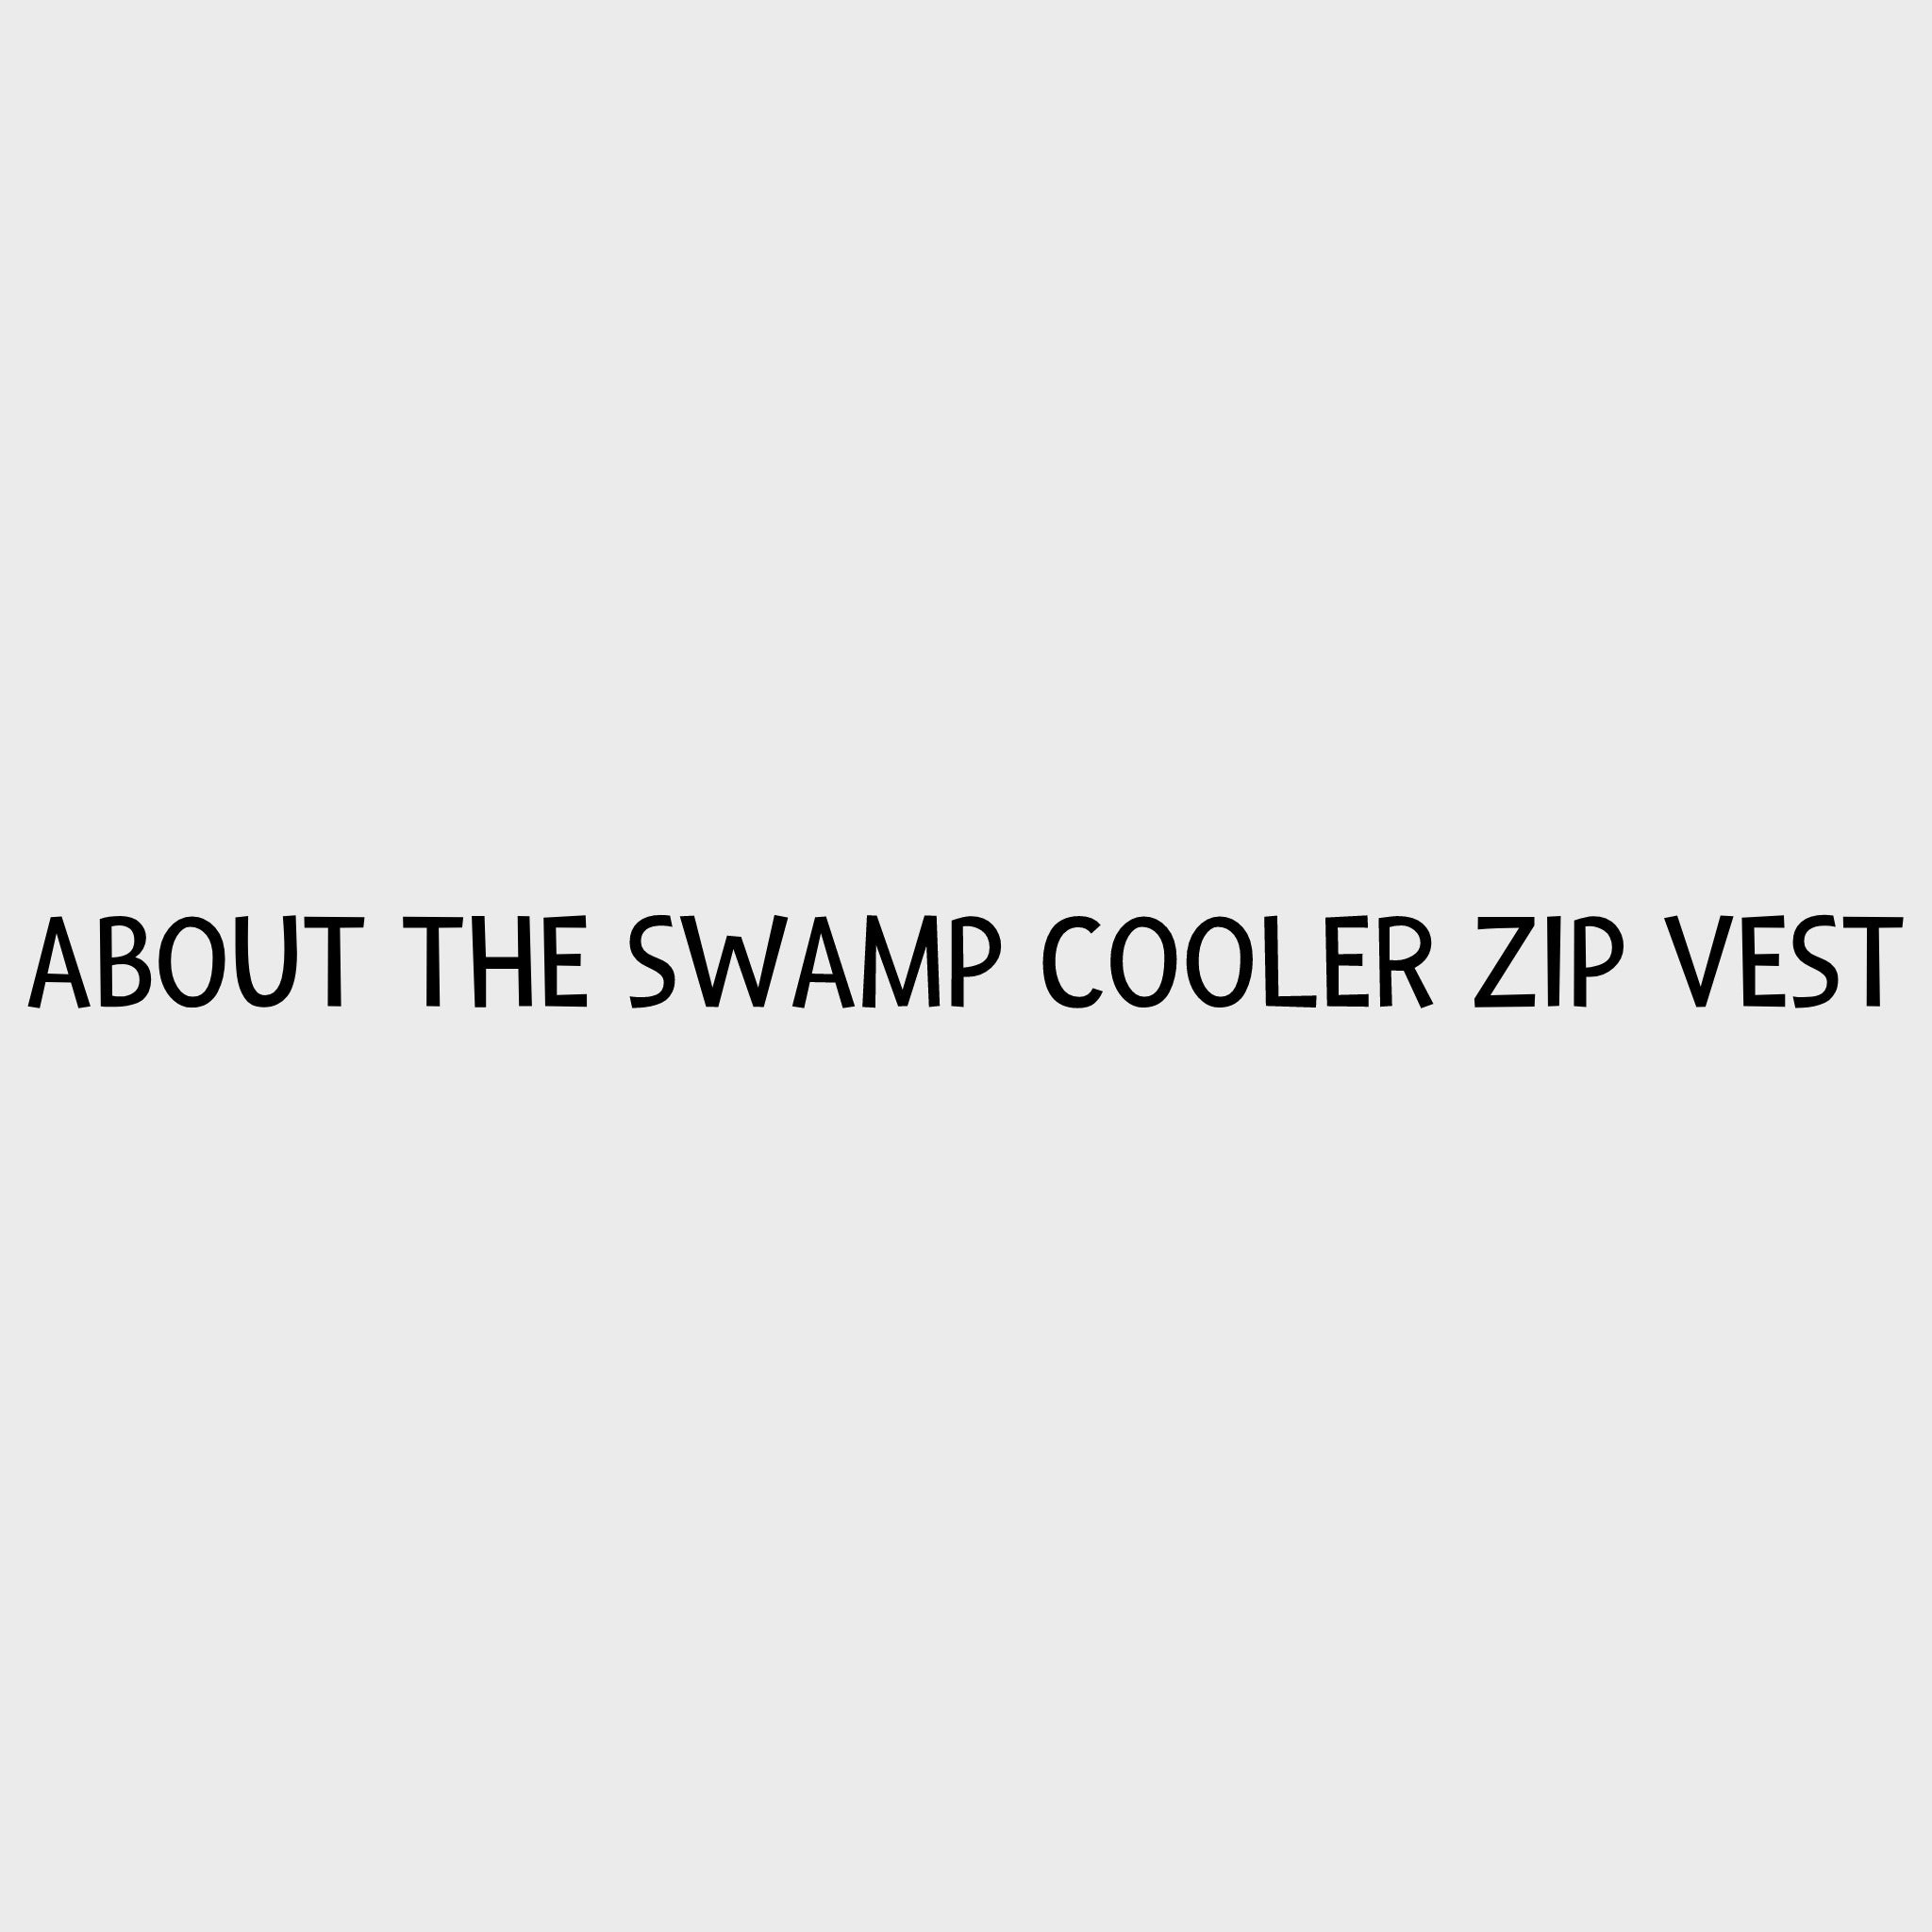 Video - Ruffwear Swamp Cooler Zip Vest